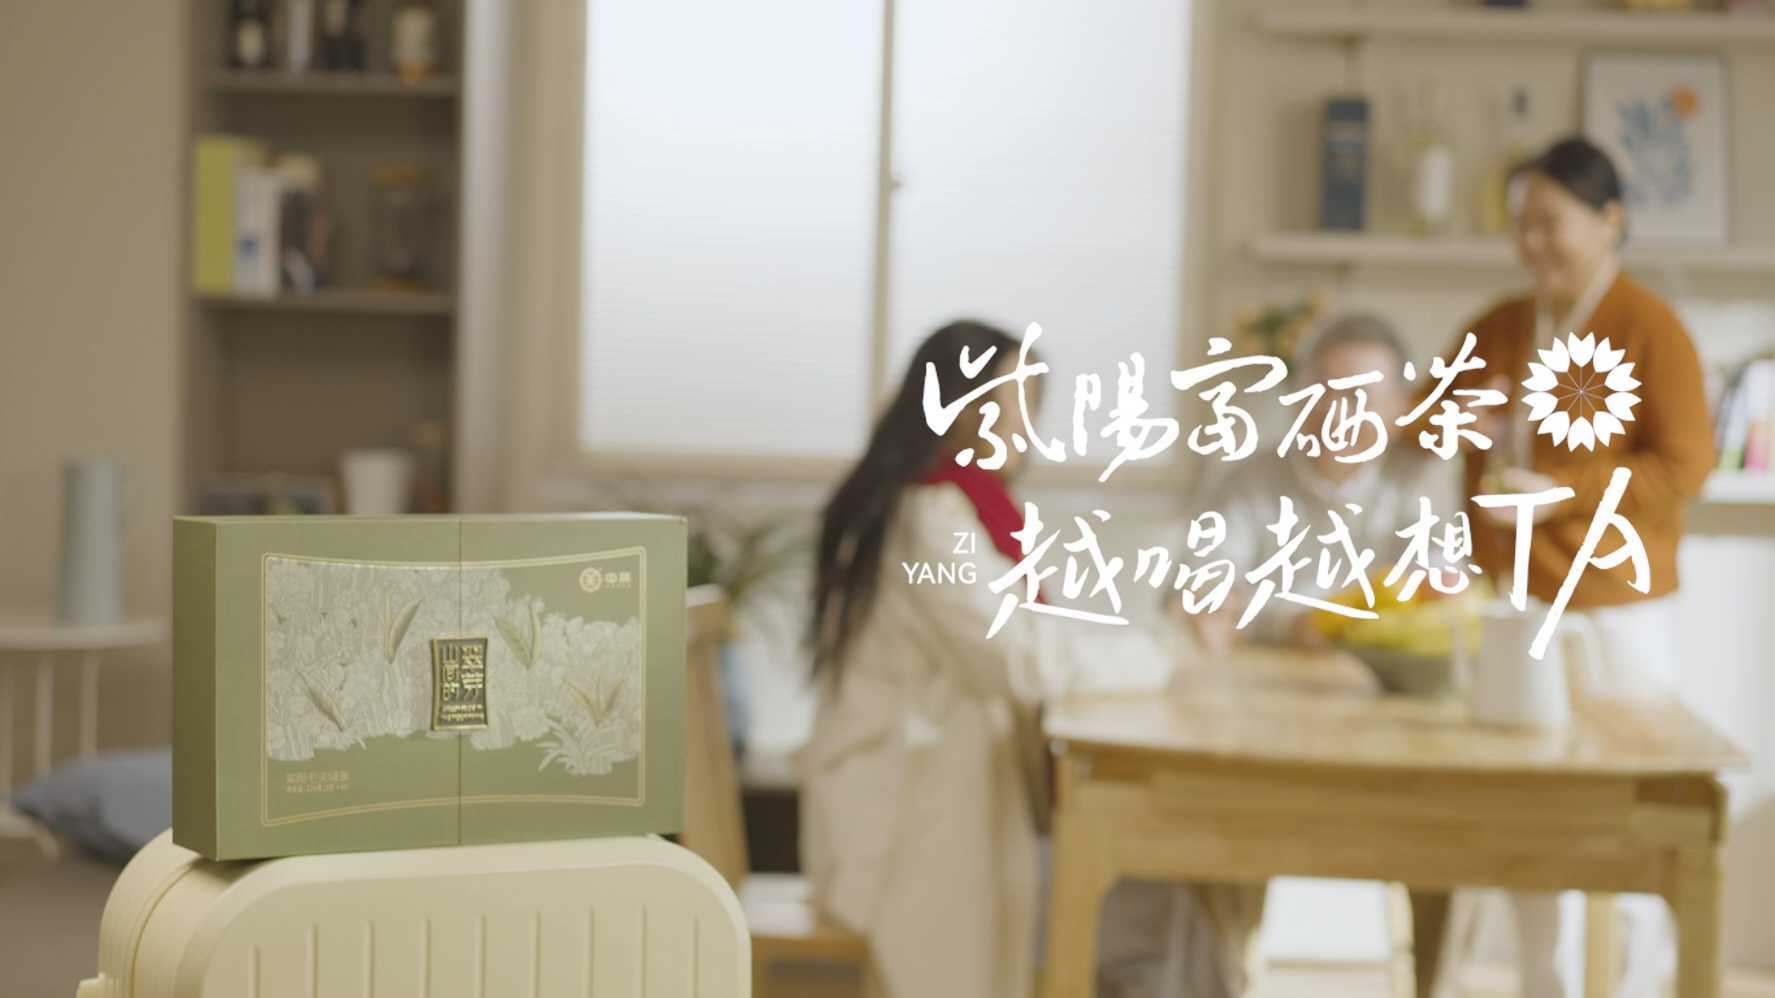 广告 | 《亲情篇》紫阳富硒茶系列